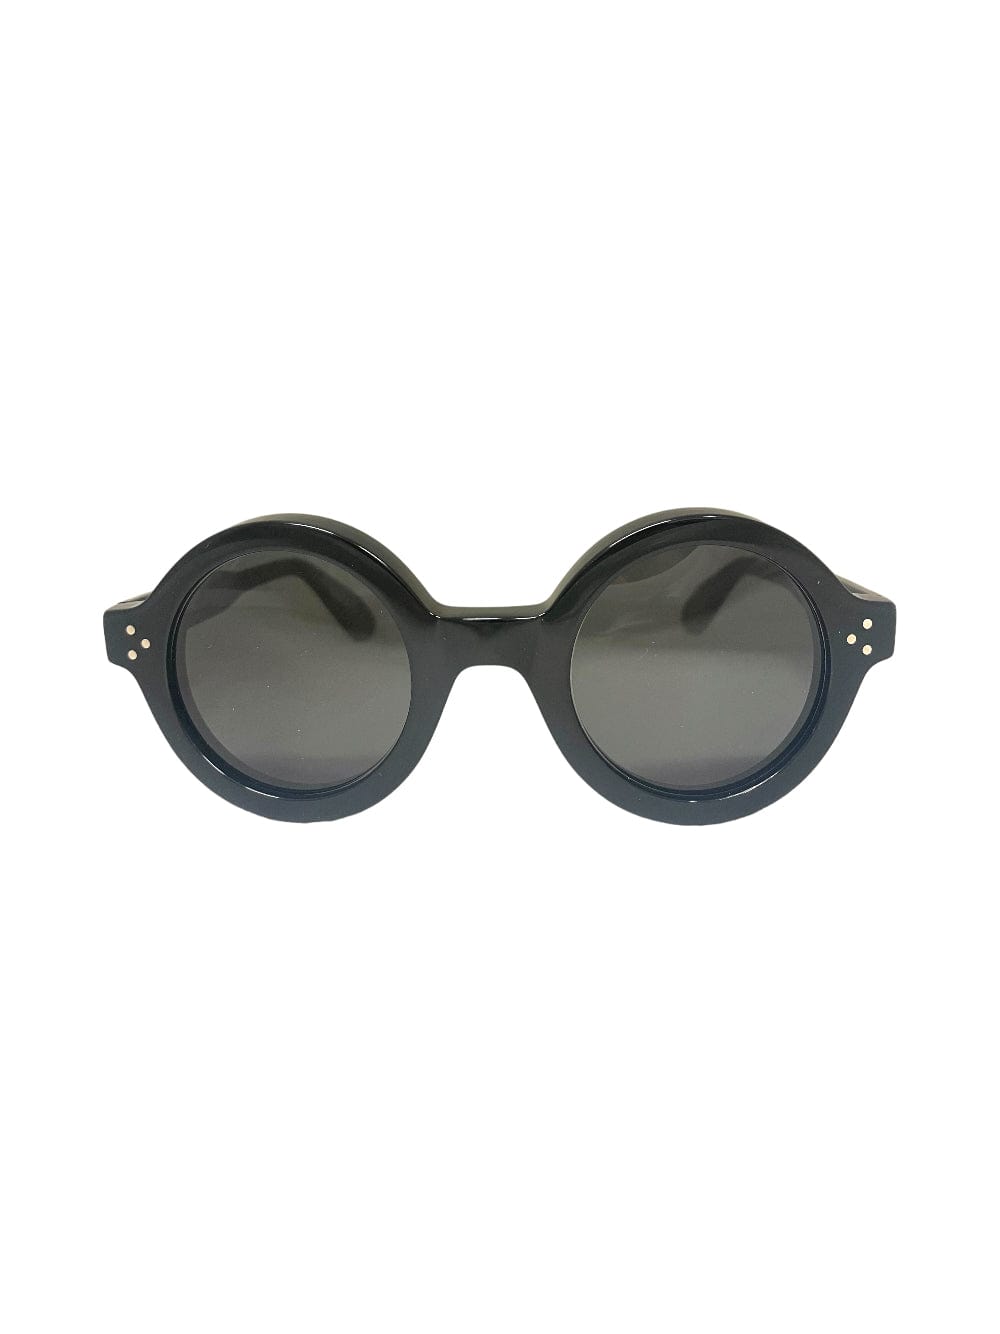 Lesca Phil - Black - Col. 5 Sunglasses